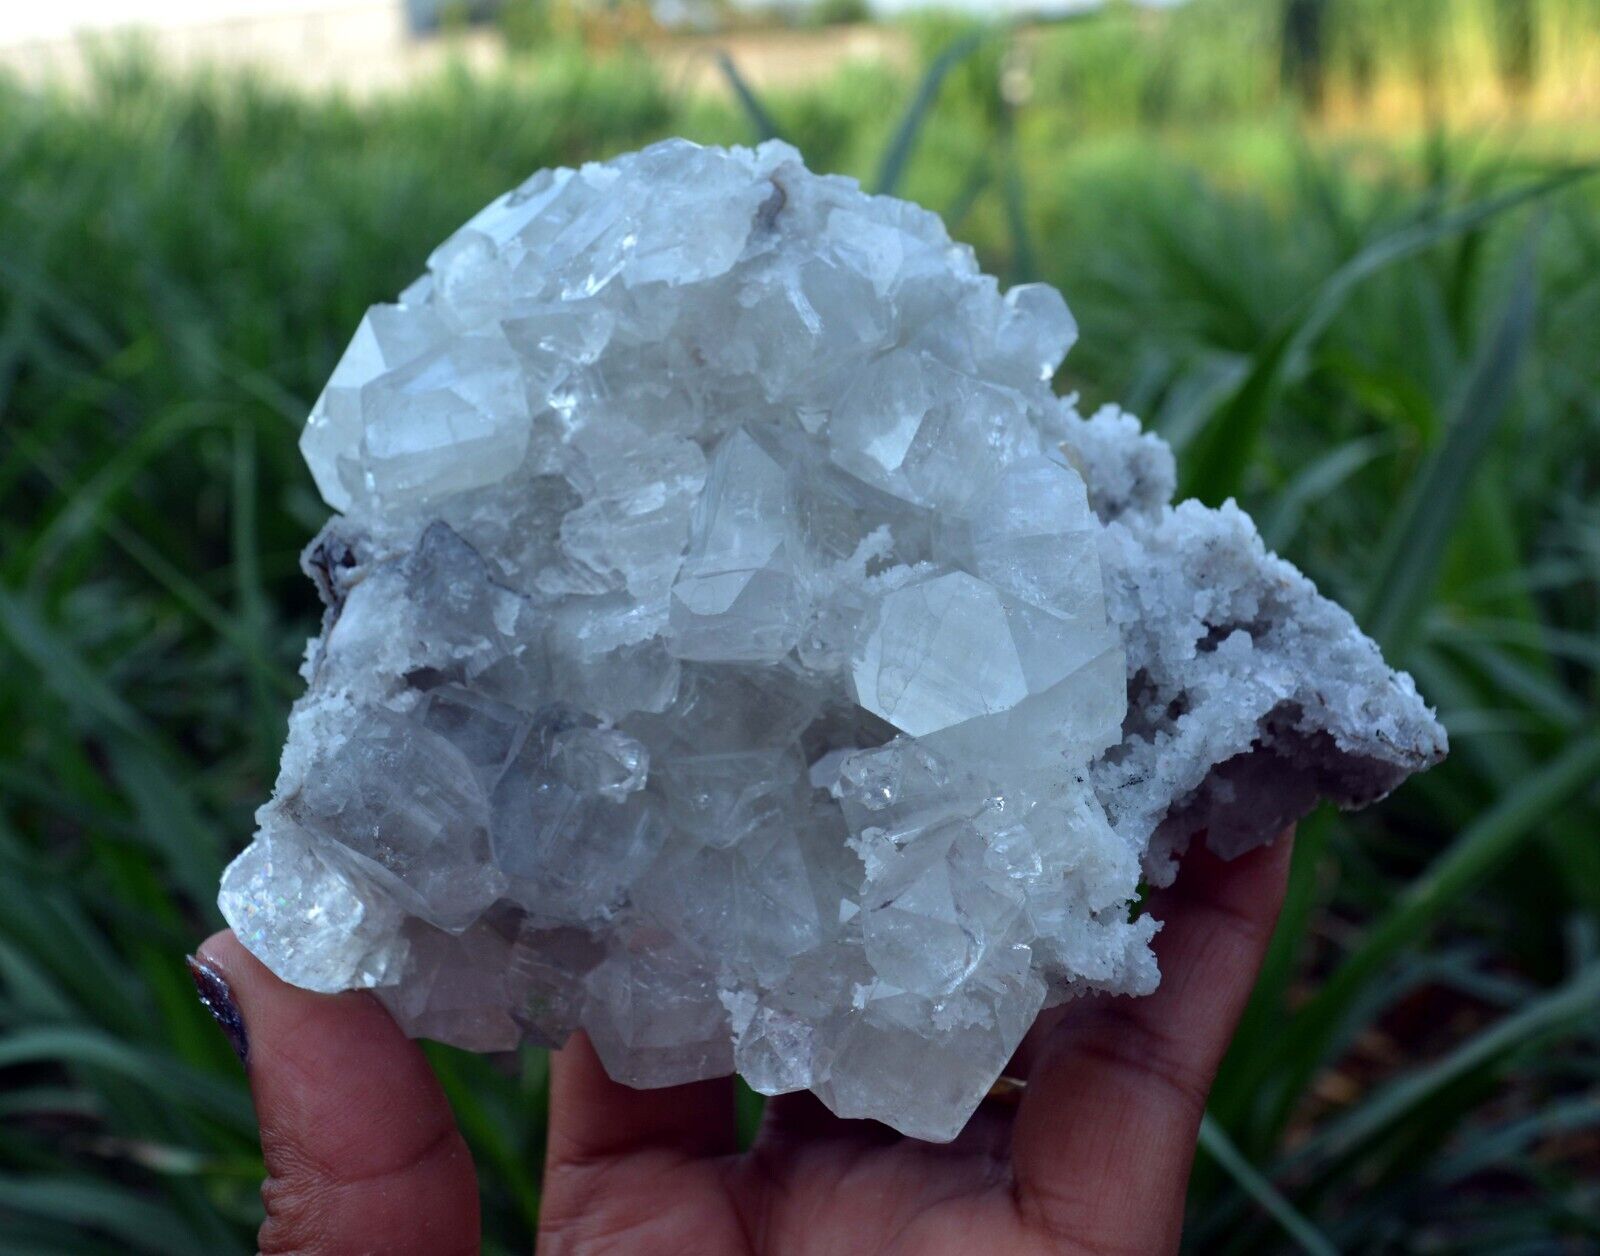 APOPHYLLITE Crystals On STILBITE & CHALCEDONY Coral-Matrix Minerals J-6.24